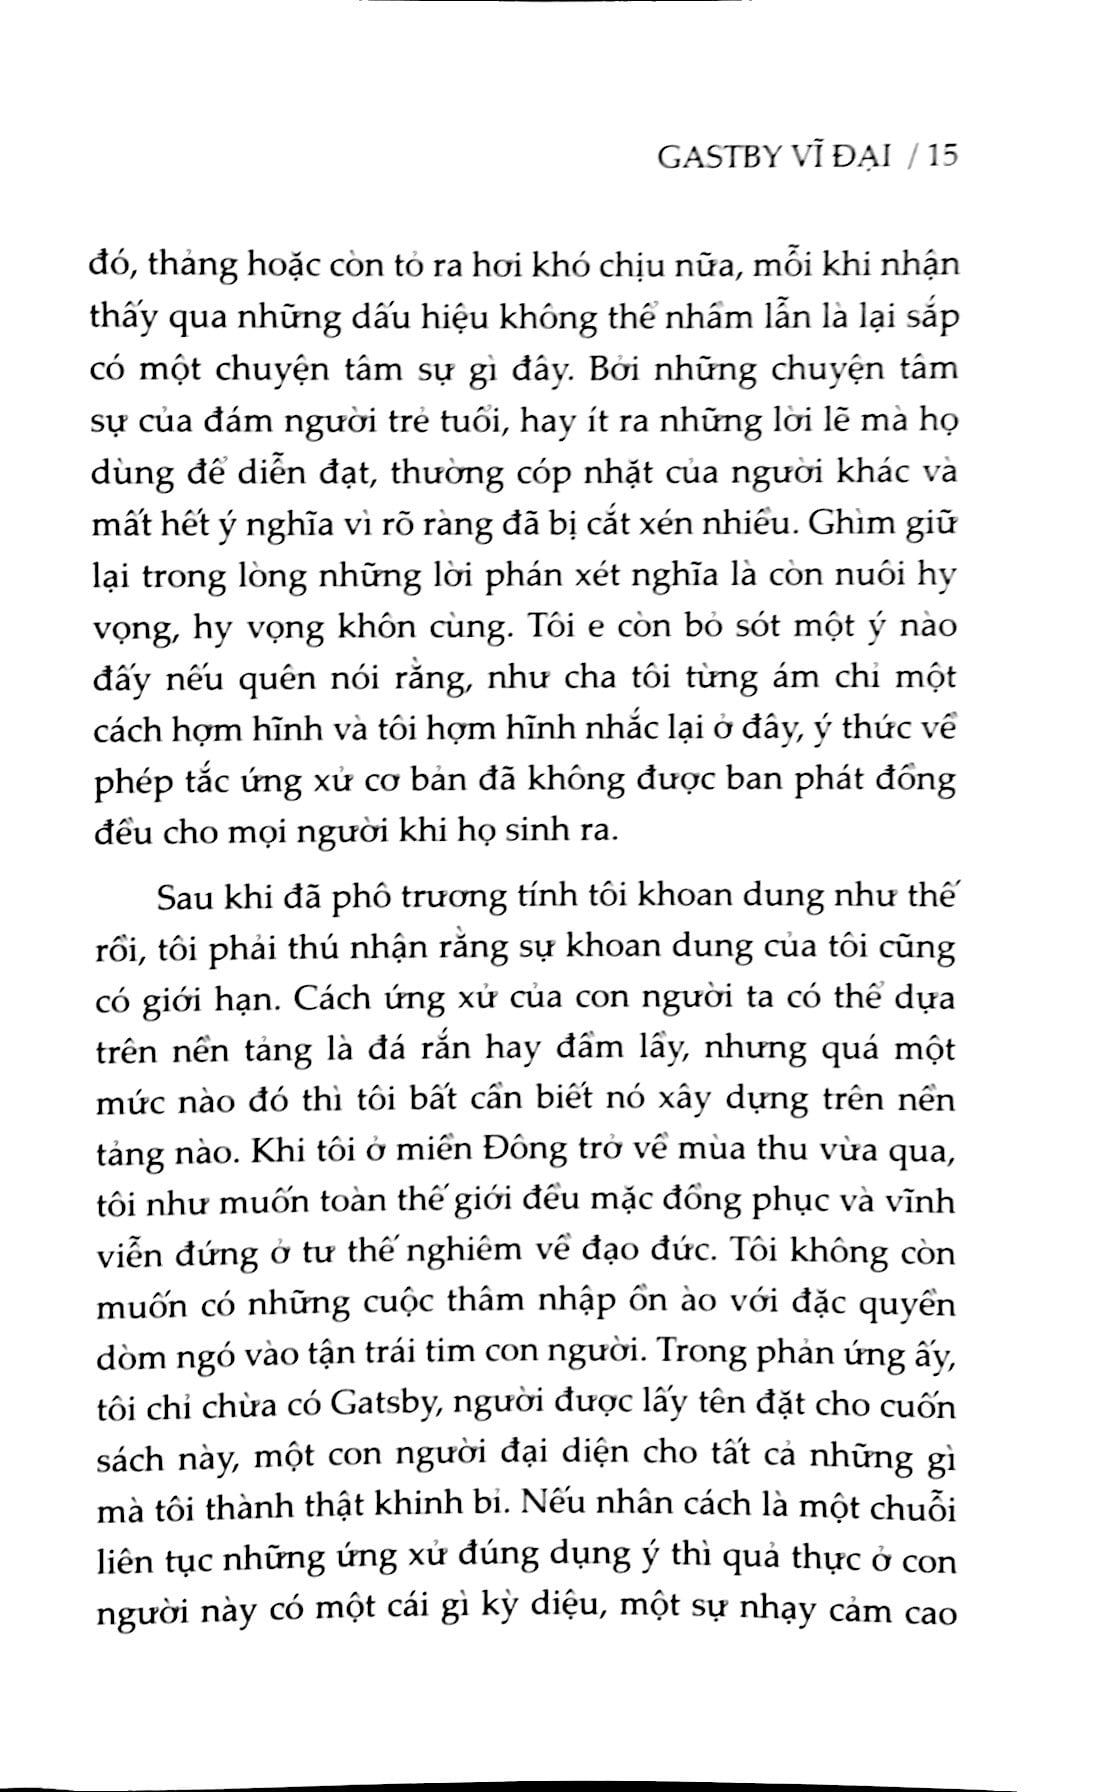 Gatsby Vĩ Đại Song Ngữ Anh-Việt PDF